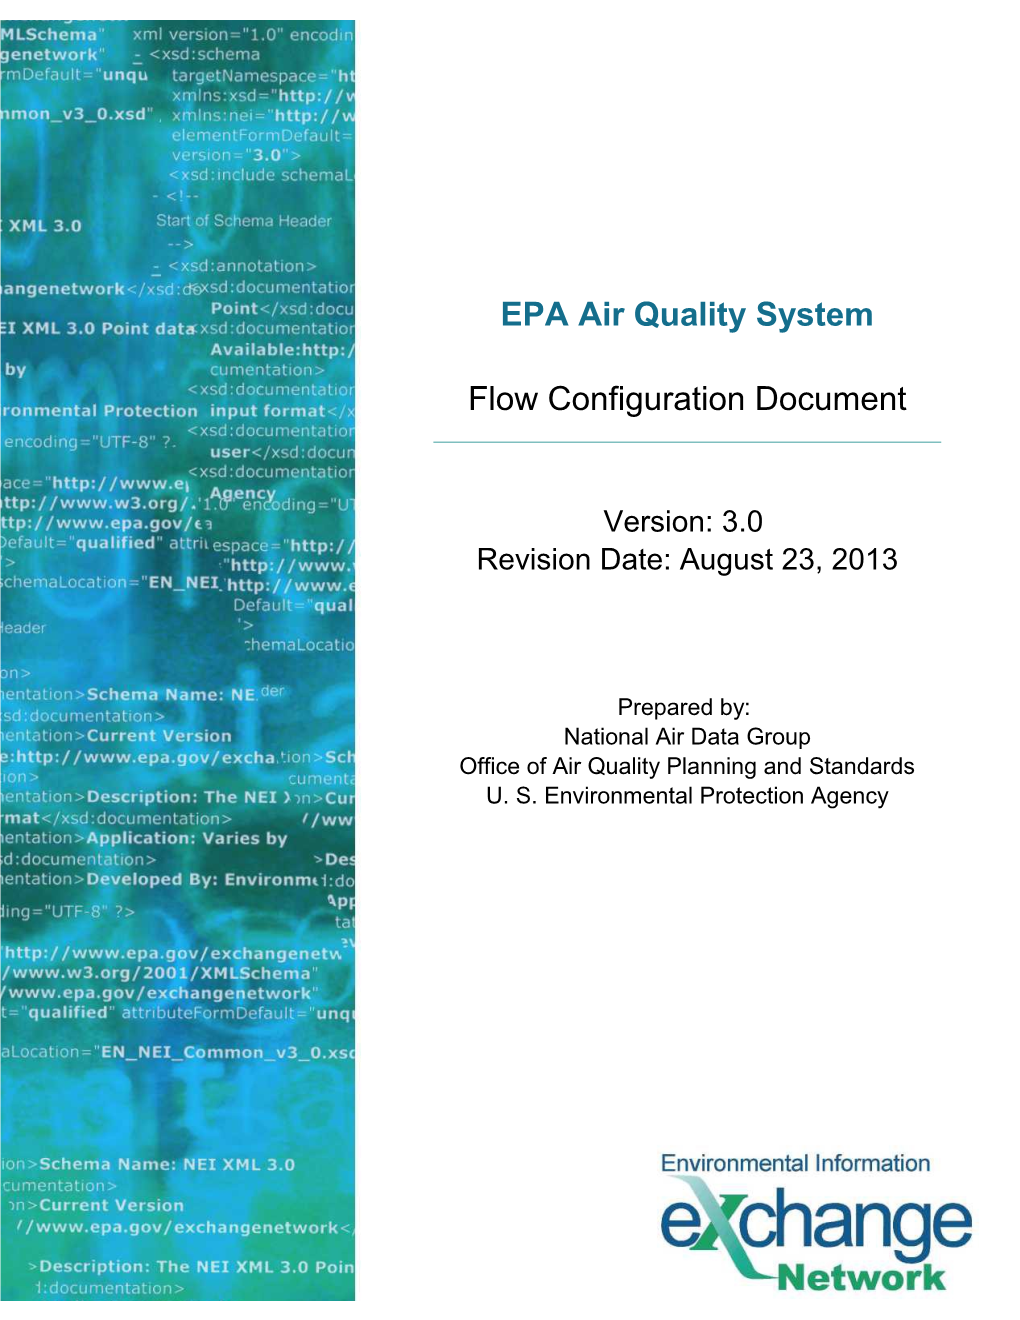 Air Quality System Flow Configuration Document V3.0 08/23/2013